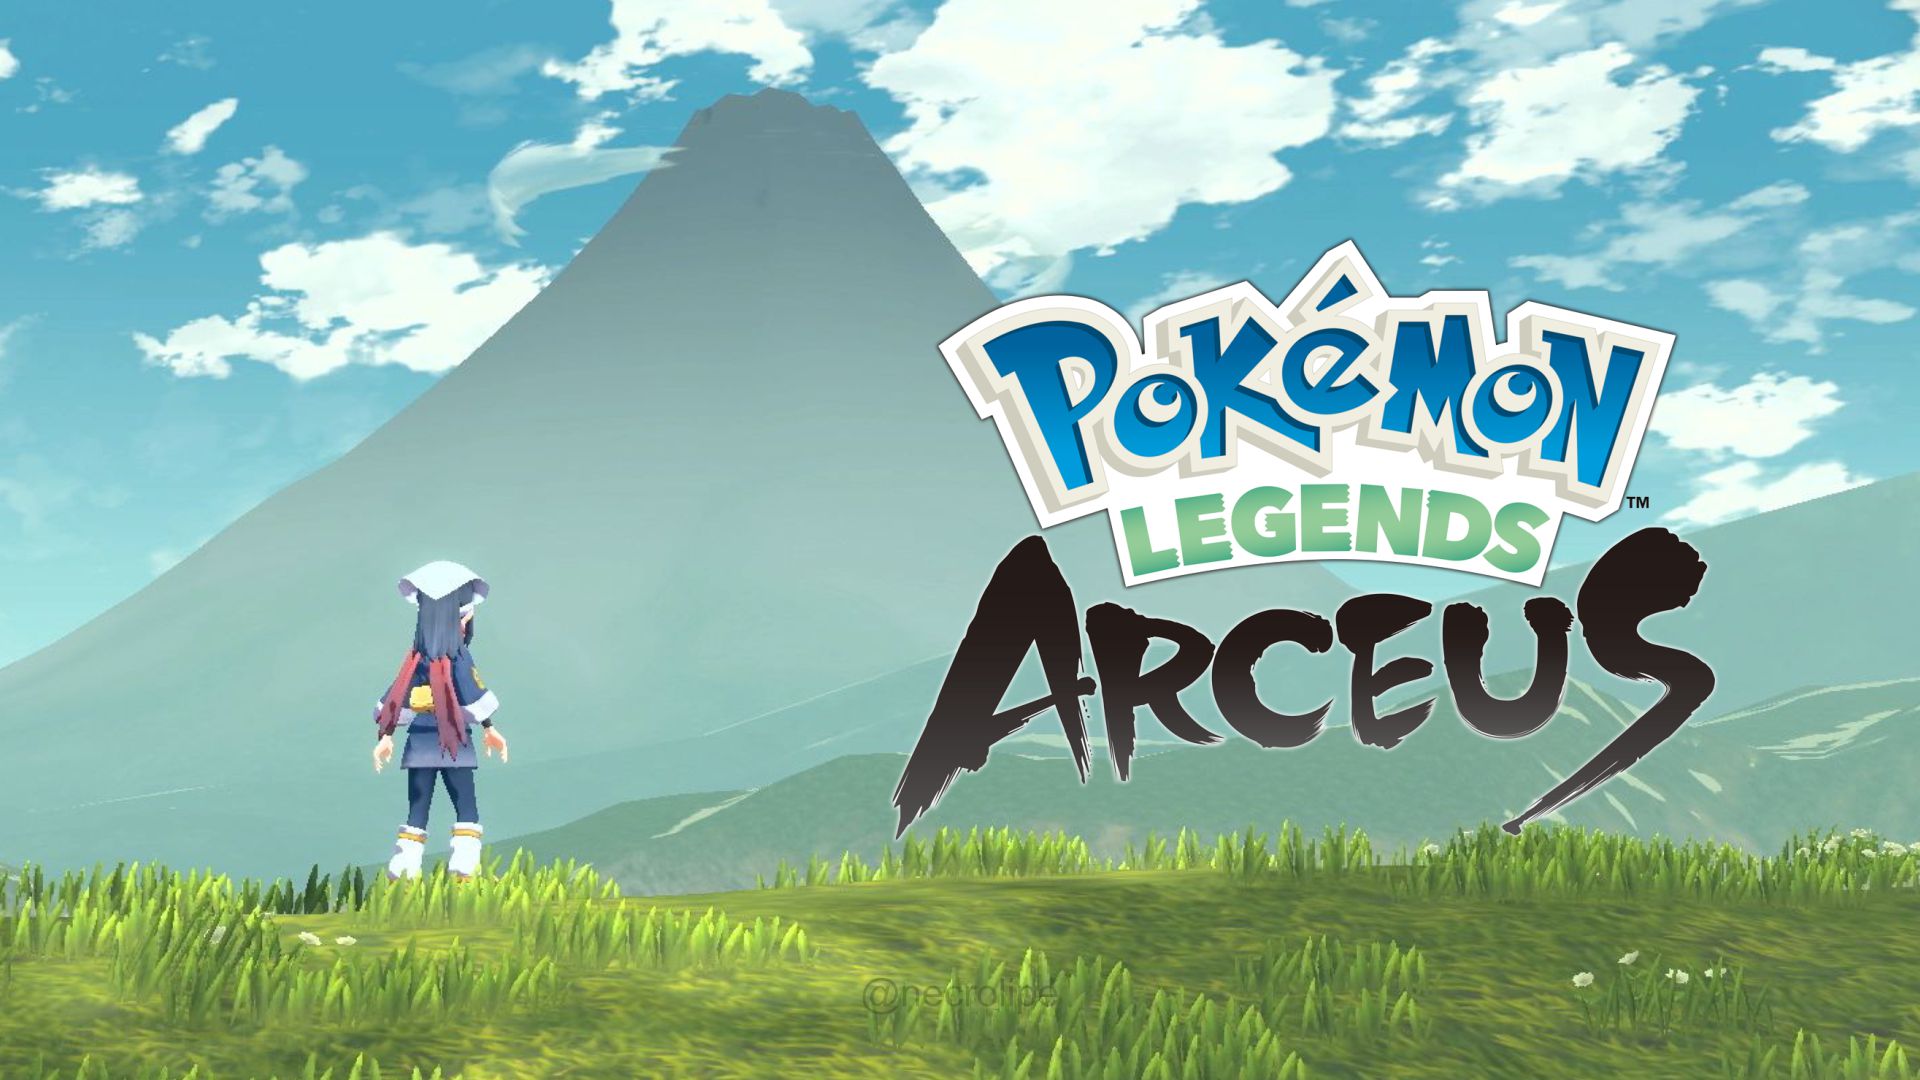 Pokémon Legends Arceus PTBR 